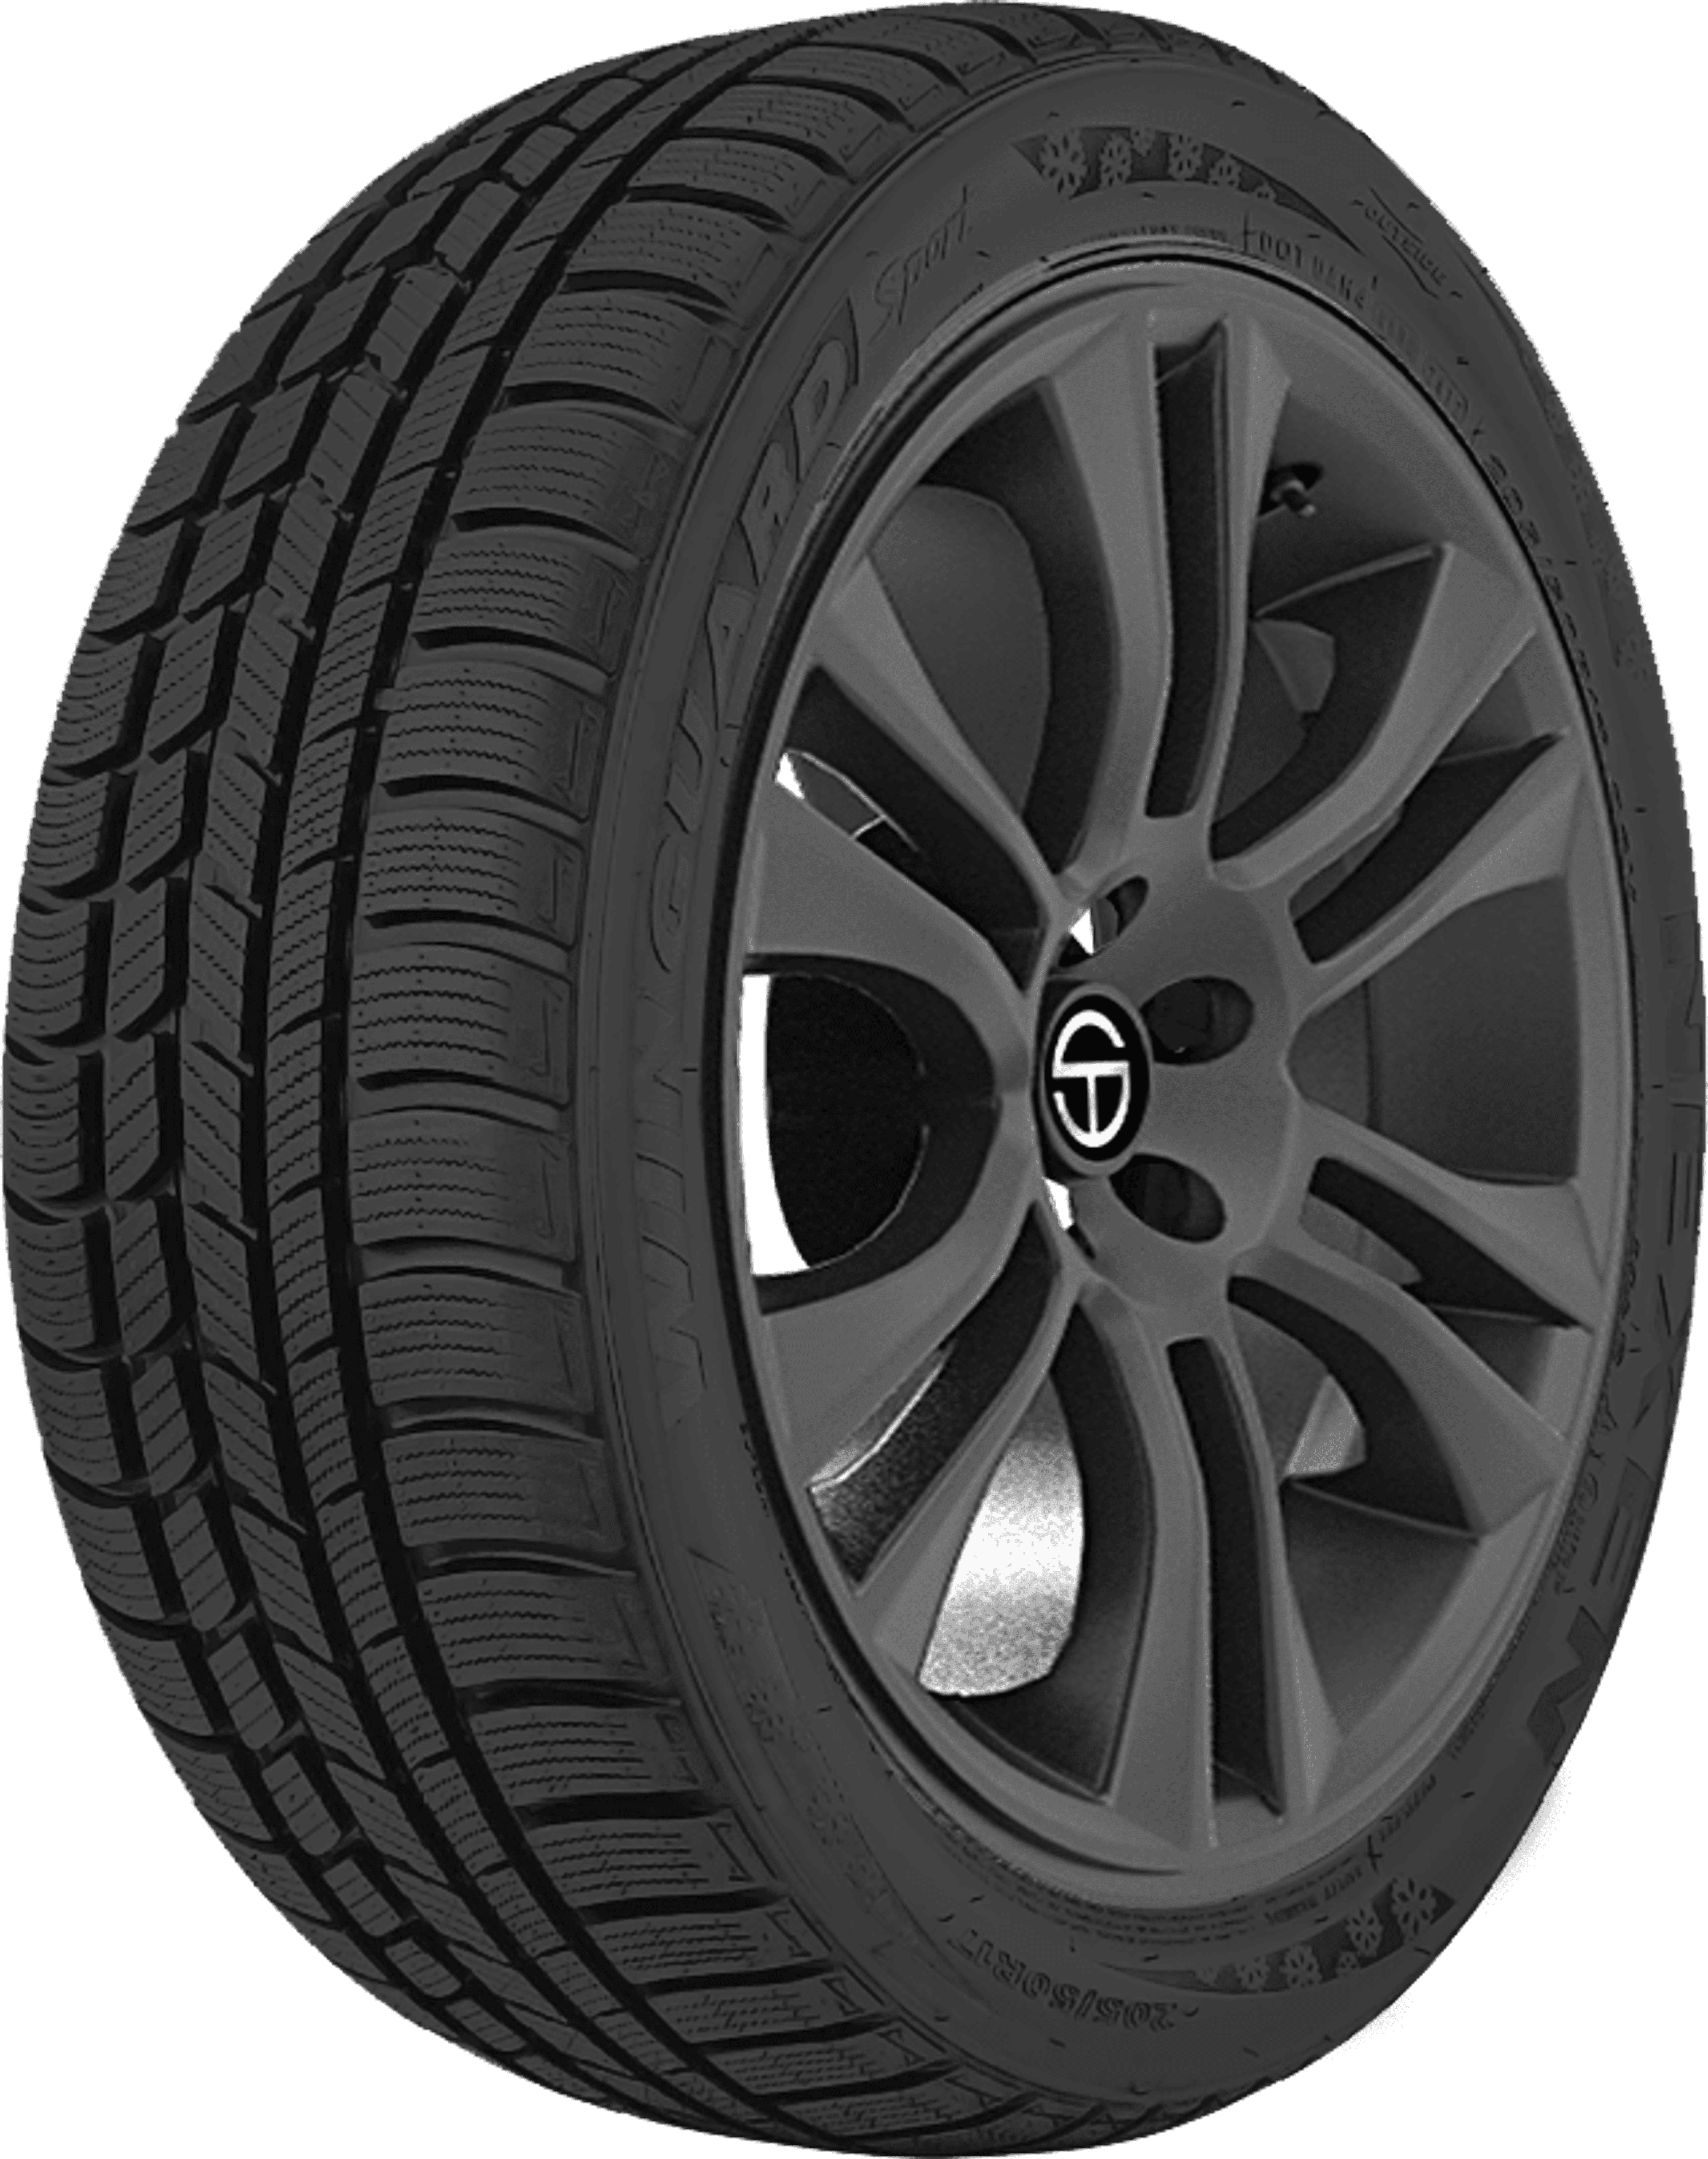 Buy Nexen Winguard Sport Online SimpleTire | Tires